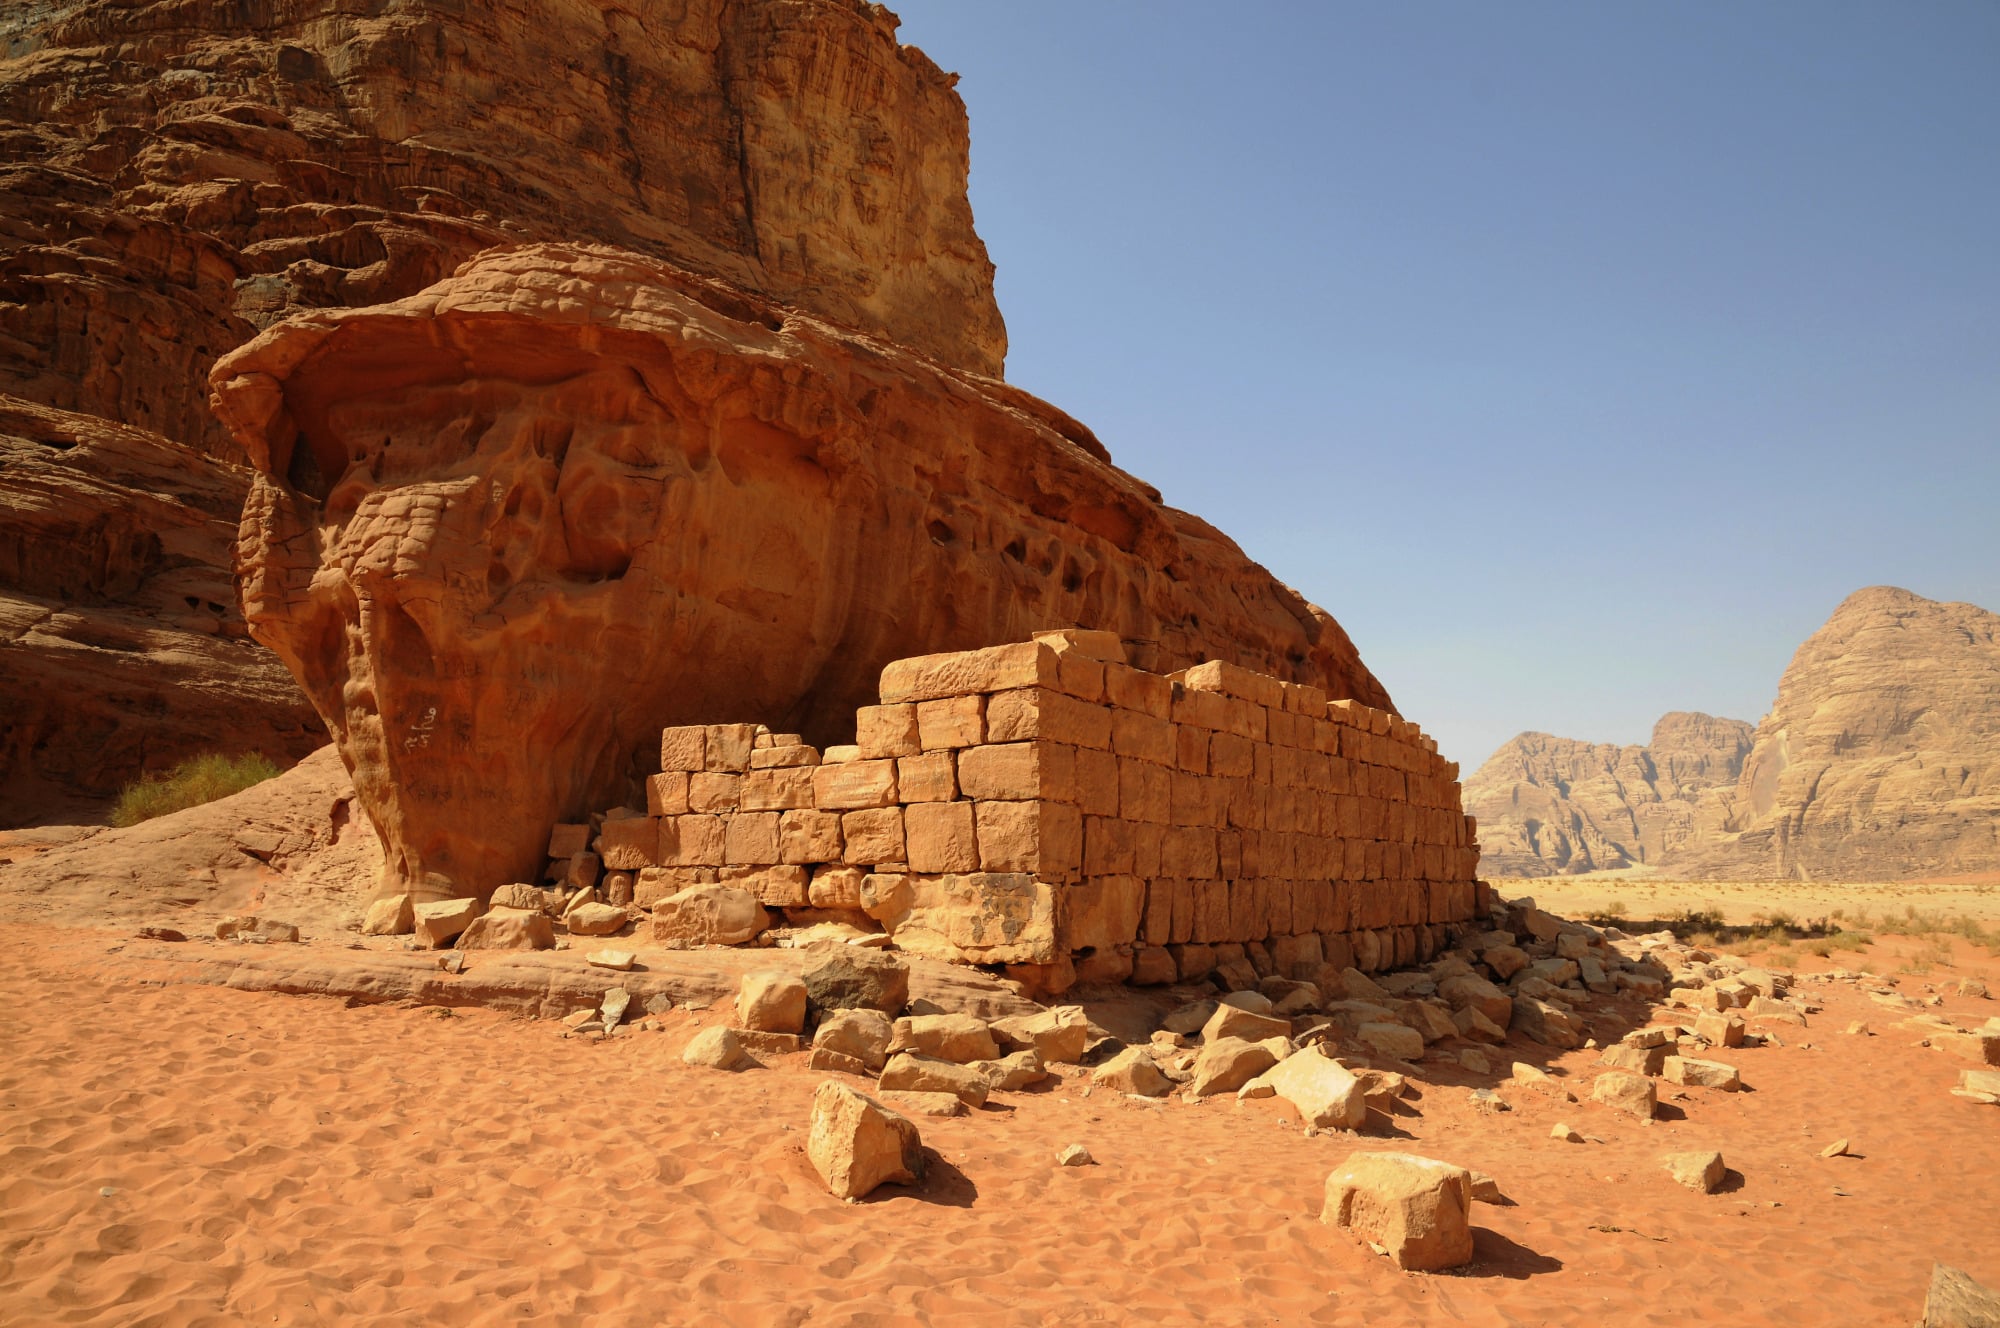 Lawrence of Arabia house ruins in wadi rum desert